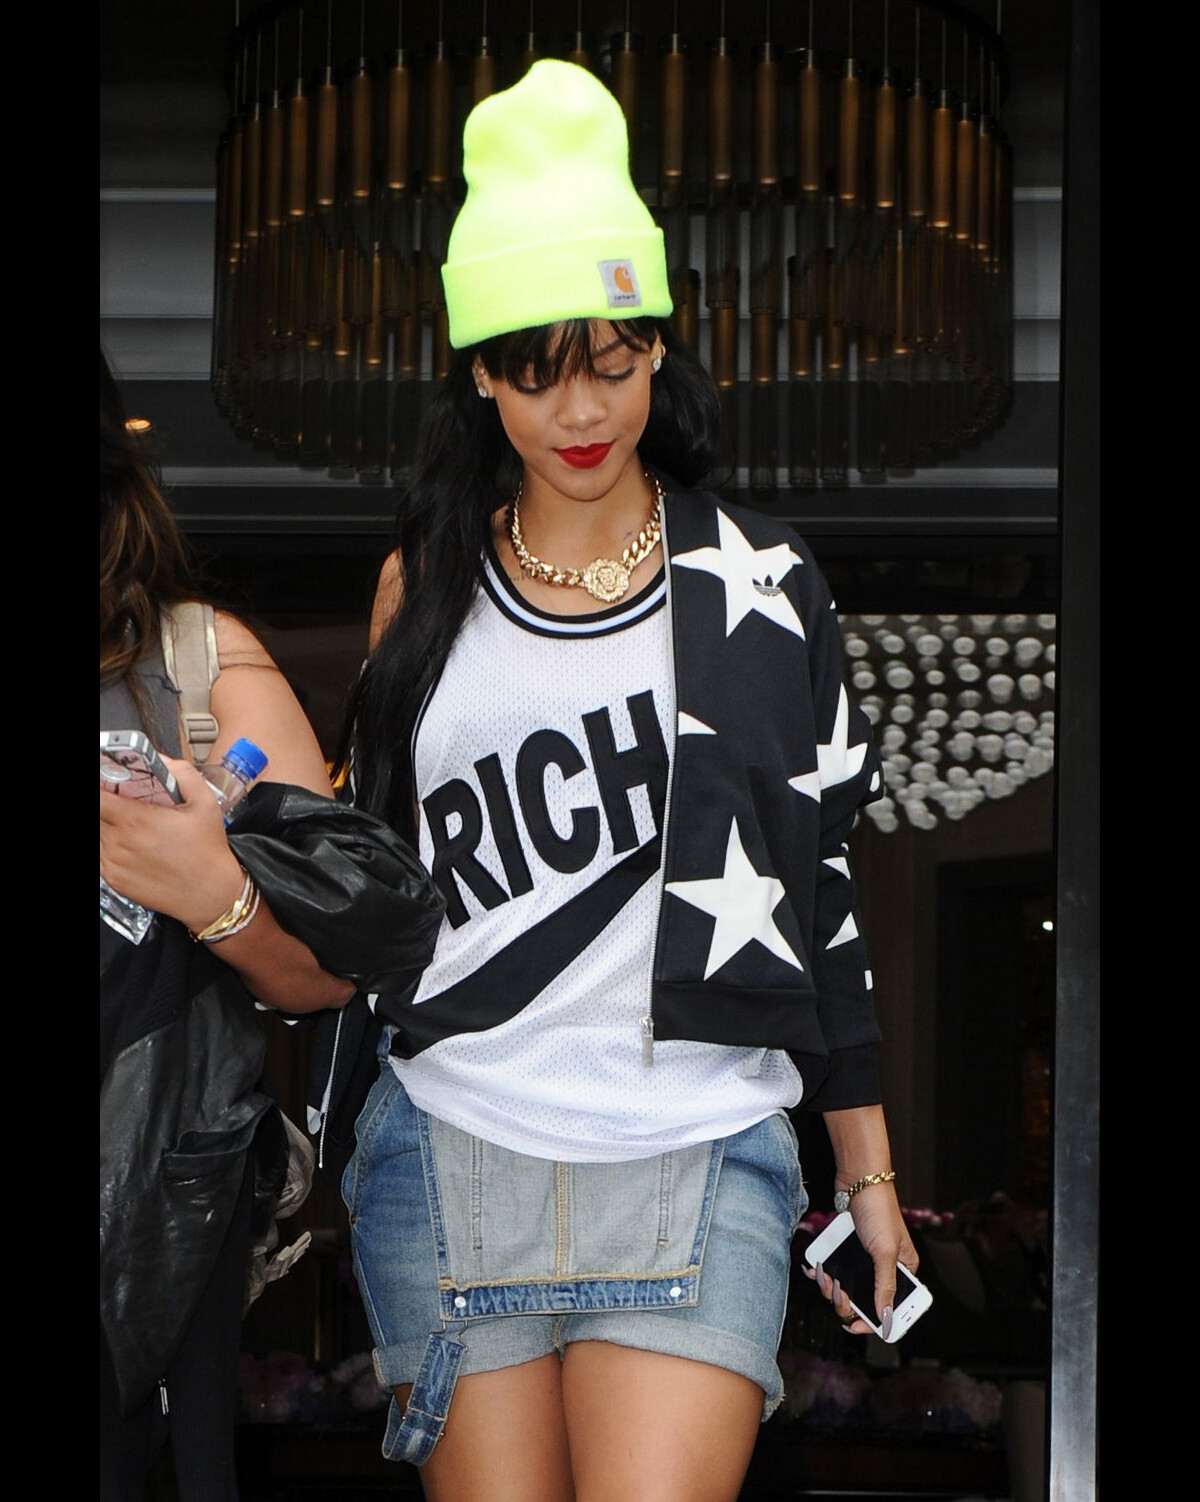 Rihanna l'extravagante ose le bonnet bibi en été, top ou flop ?